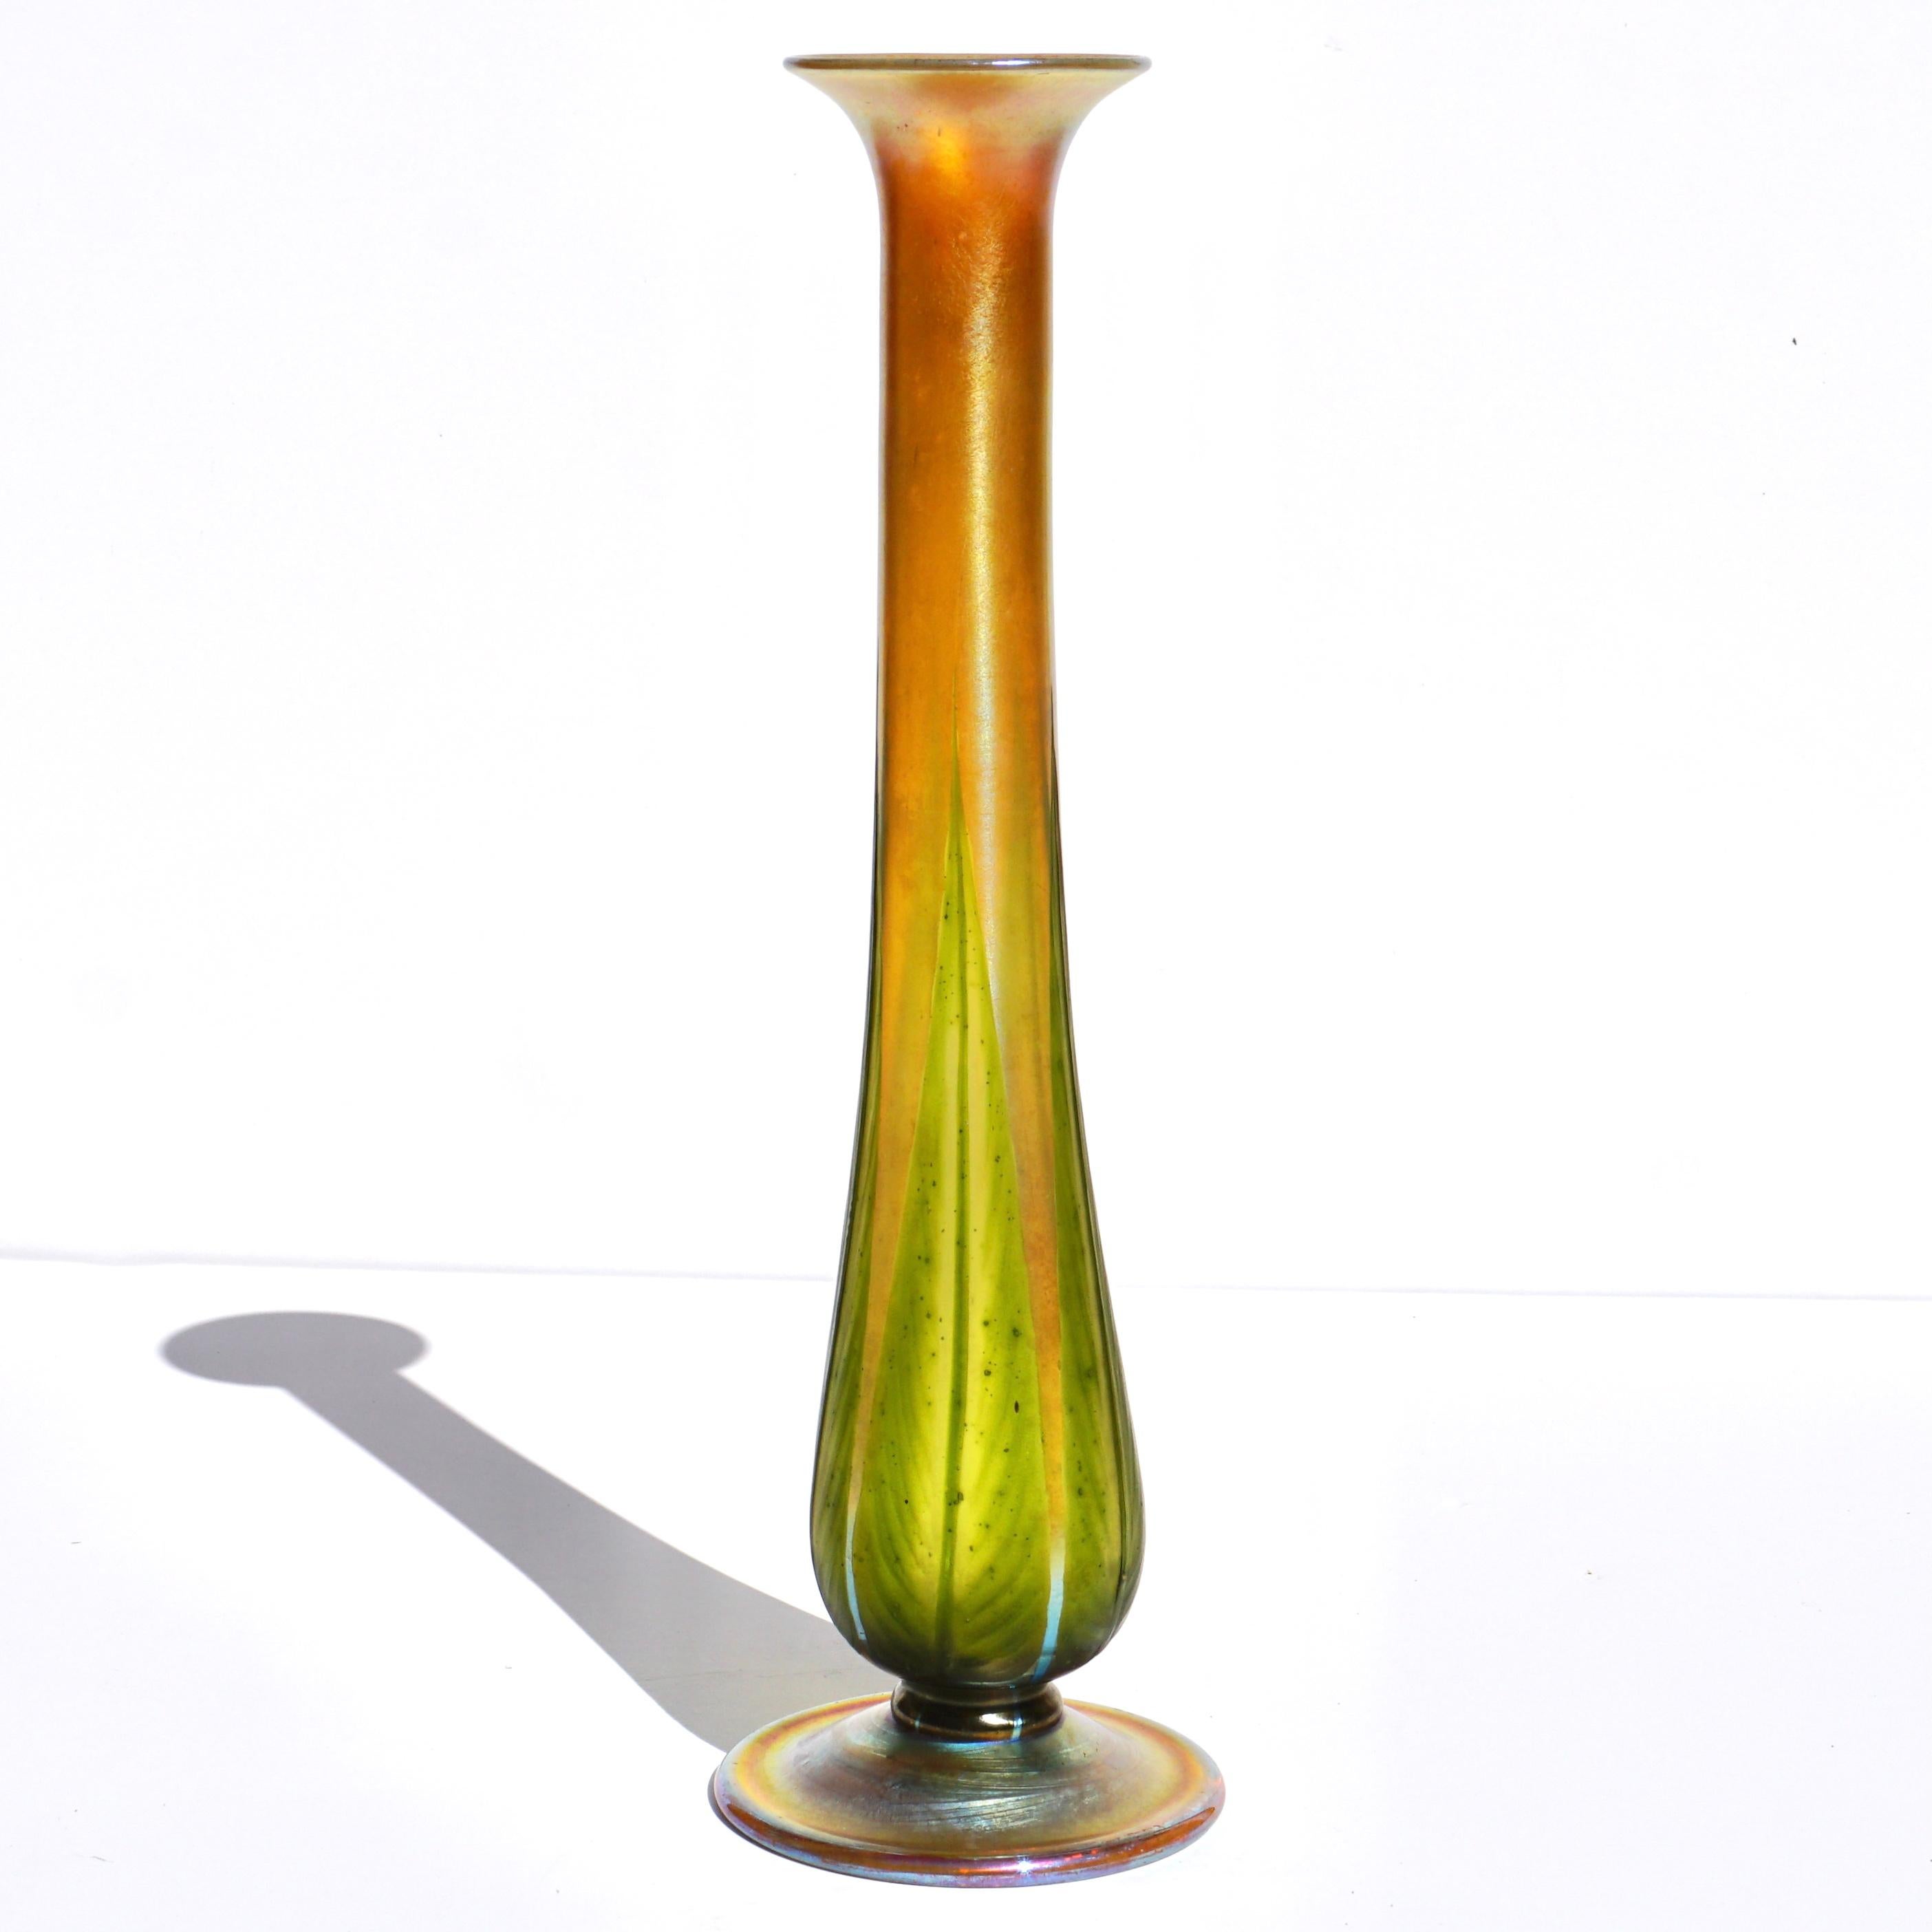 Große Vase der Tiffany Studios aus geschliffenem Favrile-Glas mit Blättern, 1918 Jugendstil.

Zeichen: 7062M A.I.C. Tiffany Inc. Favrile

Maße: Höhe: 11,85 Zoll (29,8 cm) Durchmesser: 3,5 Zoll

Schlanke Vase mit Fuß und fünf zart geschnitzten